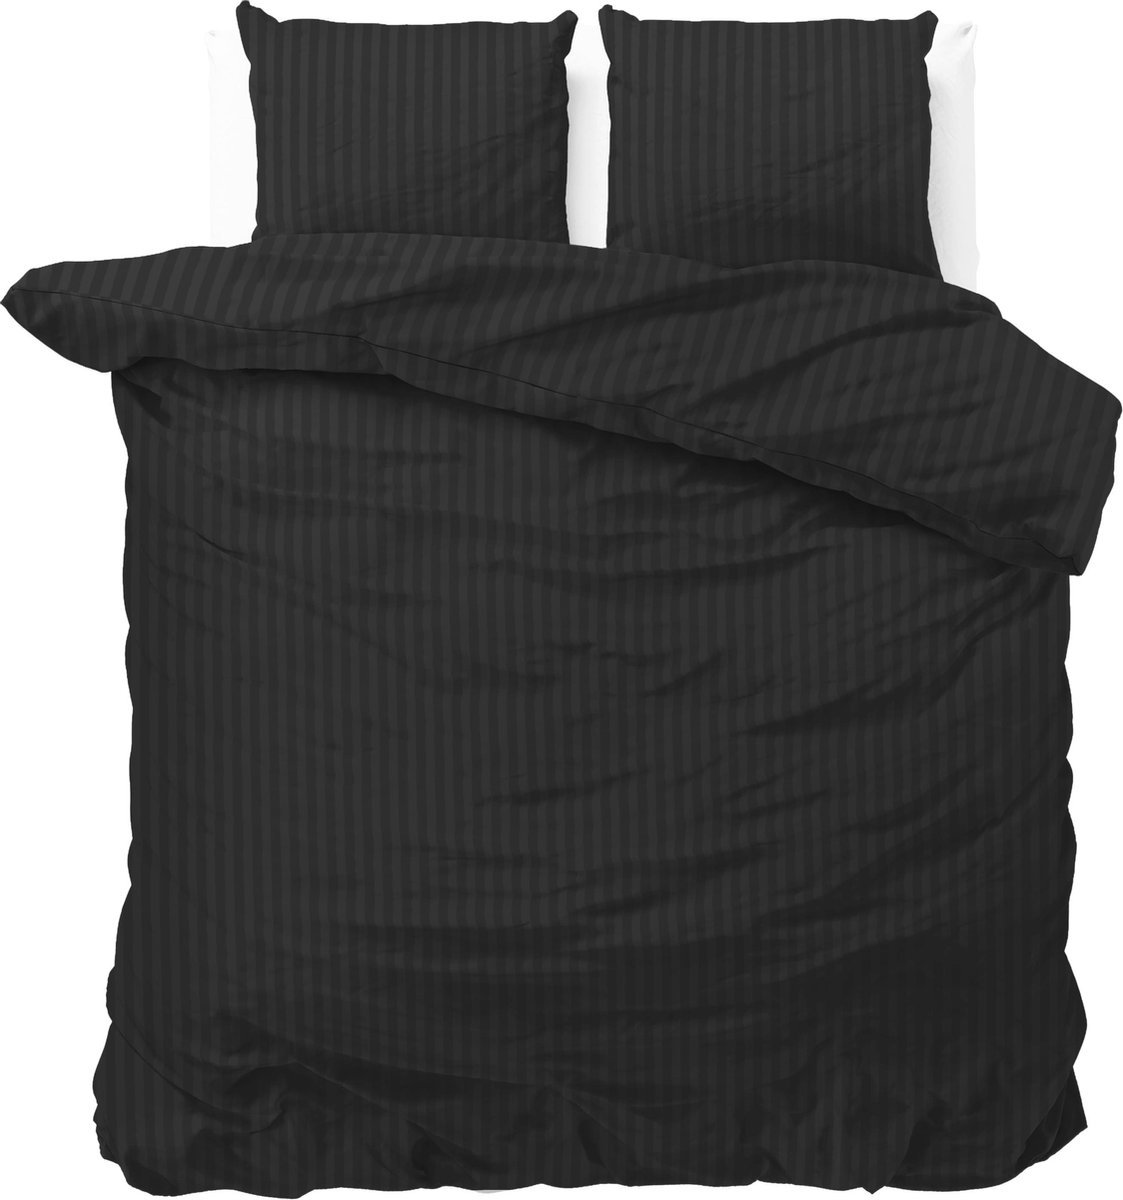 Luxe dekbedovertrek Stripes zwart - 140x200/220 (eenpersoons) - zacht en fijne kwaliteit - stijlvolle uitstraling - met handige drukknopen